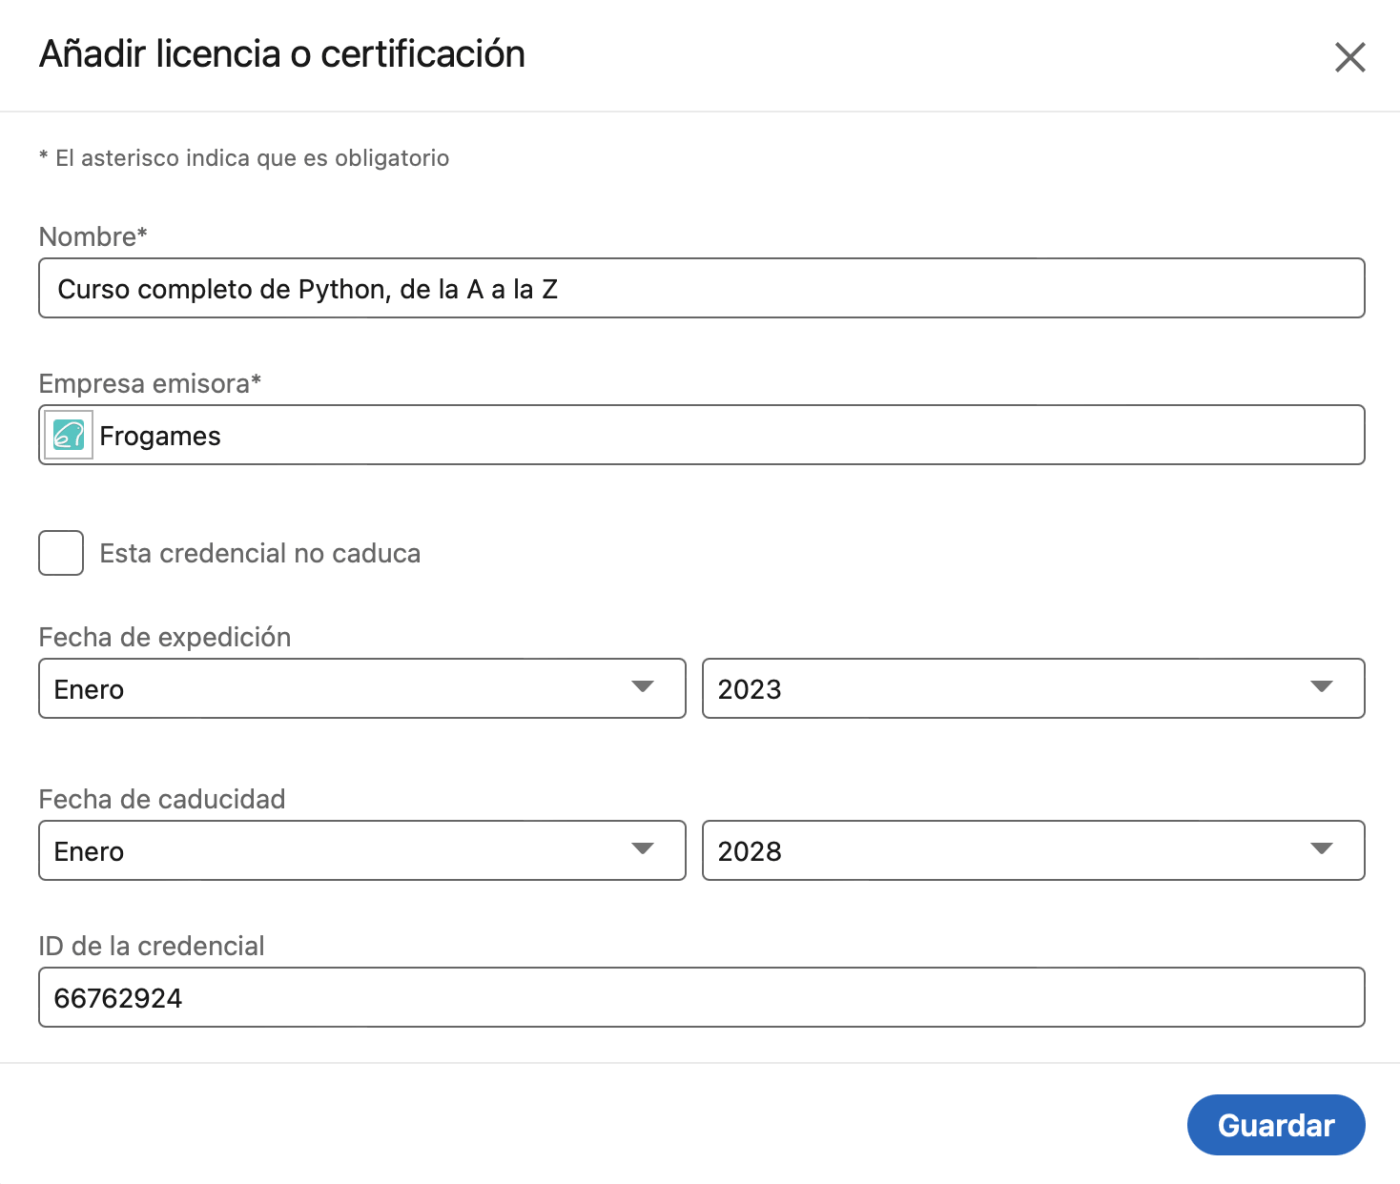 Añadir tu certificado a LinkedIn